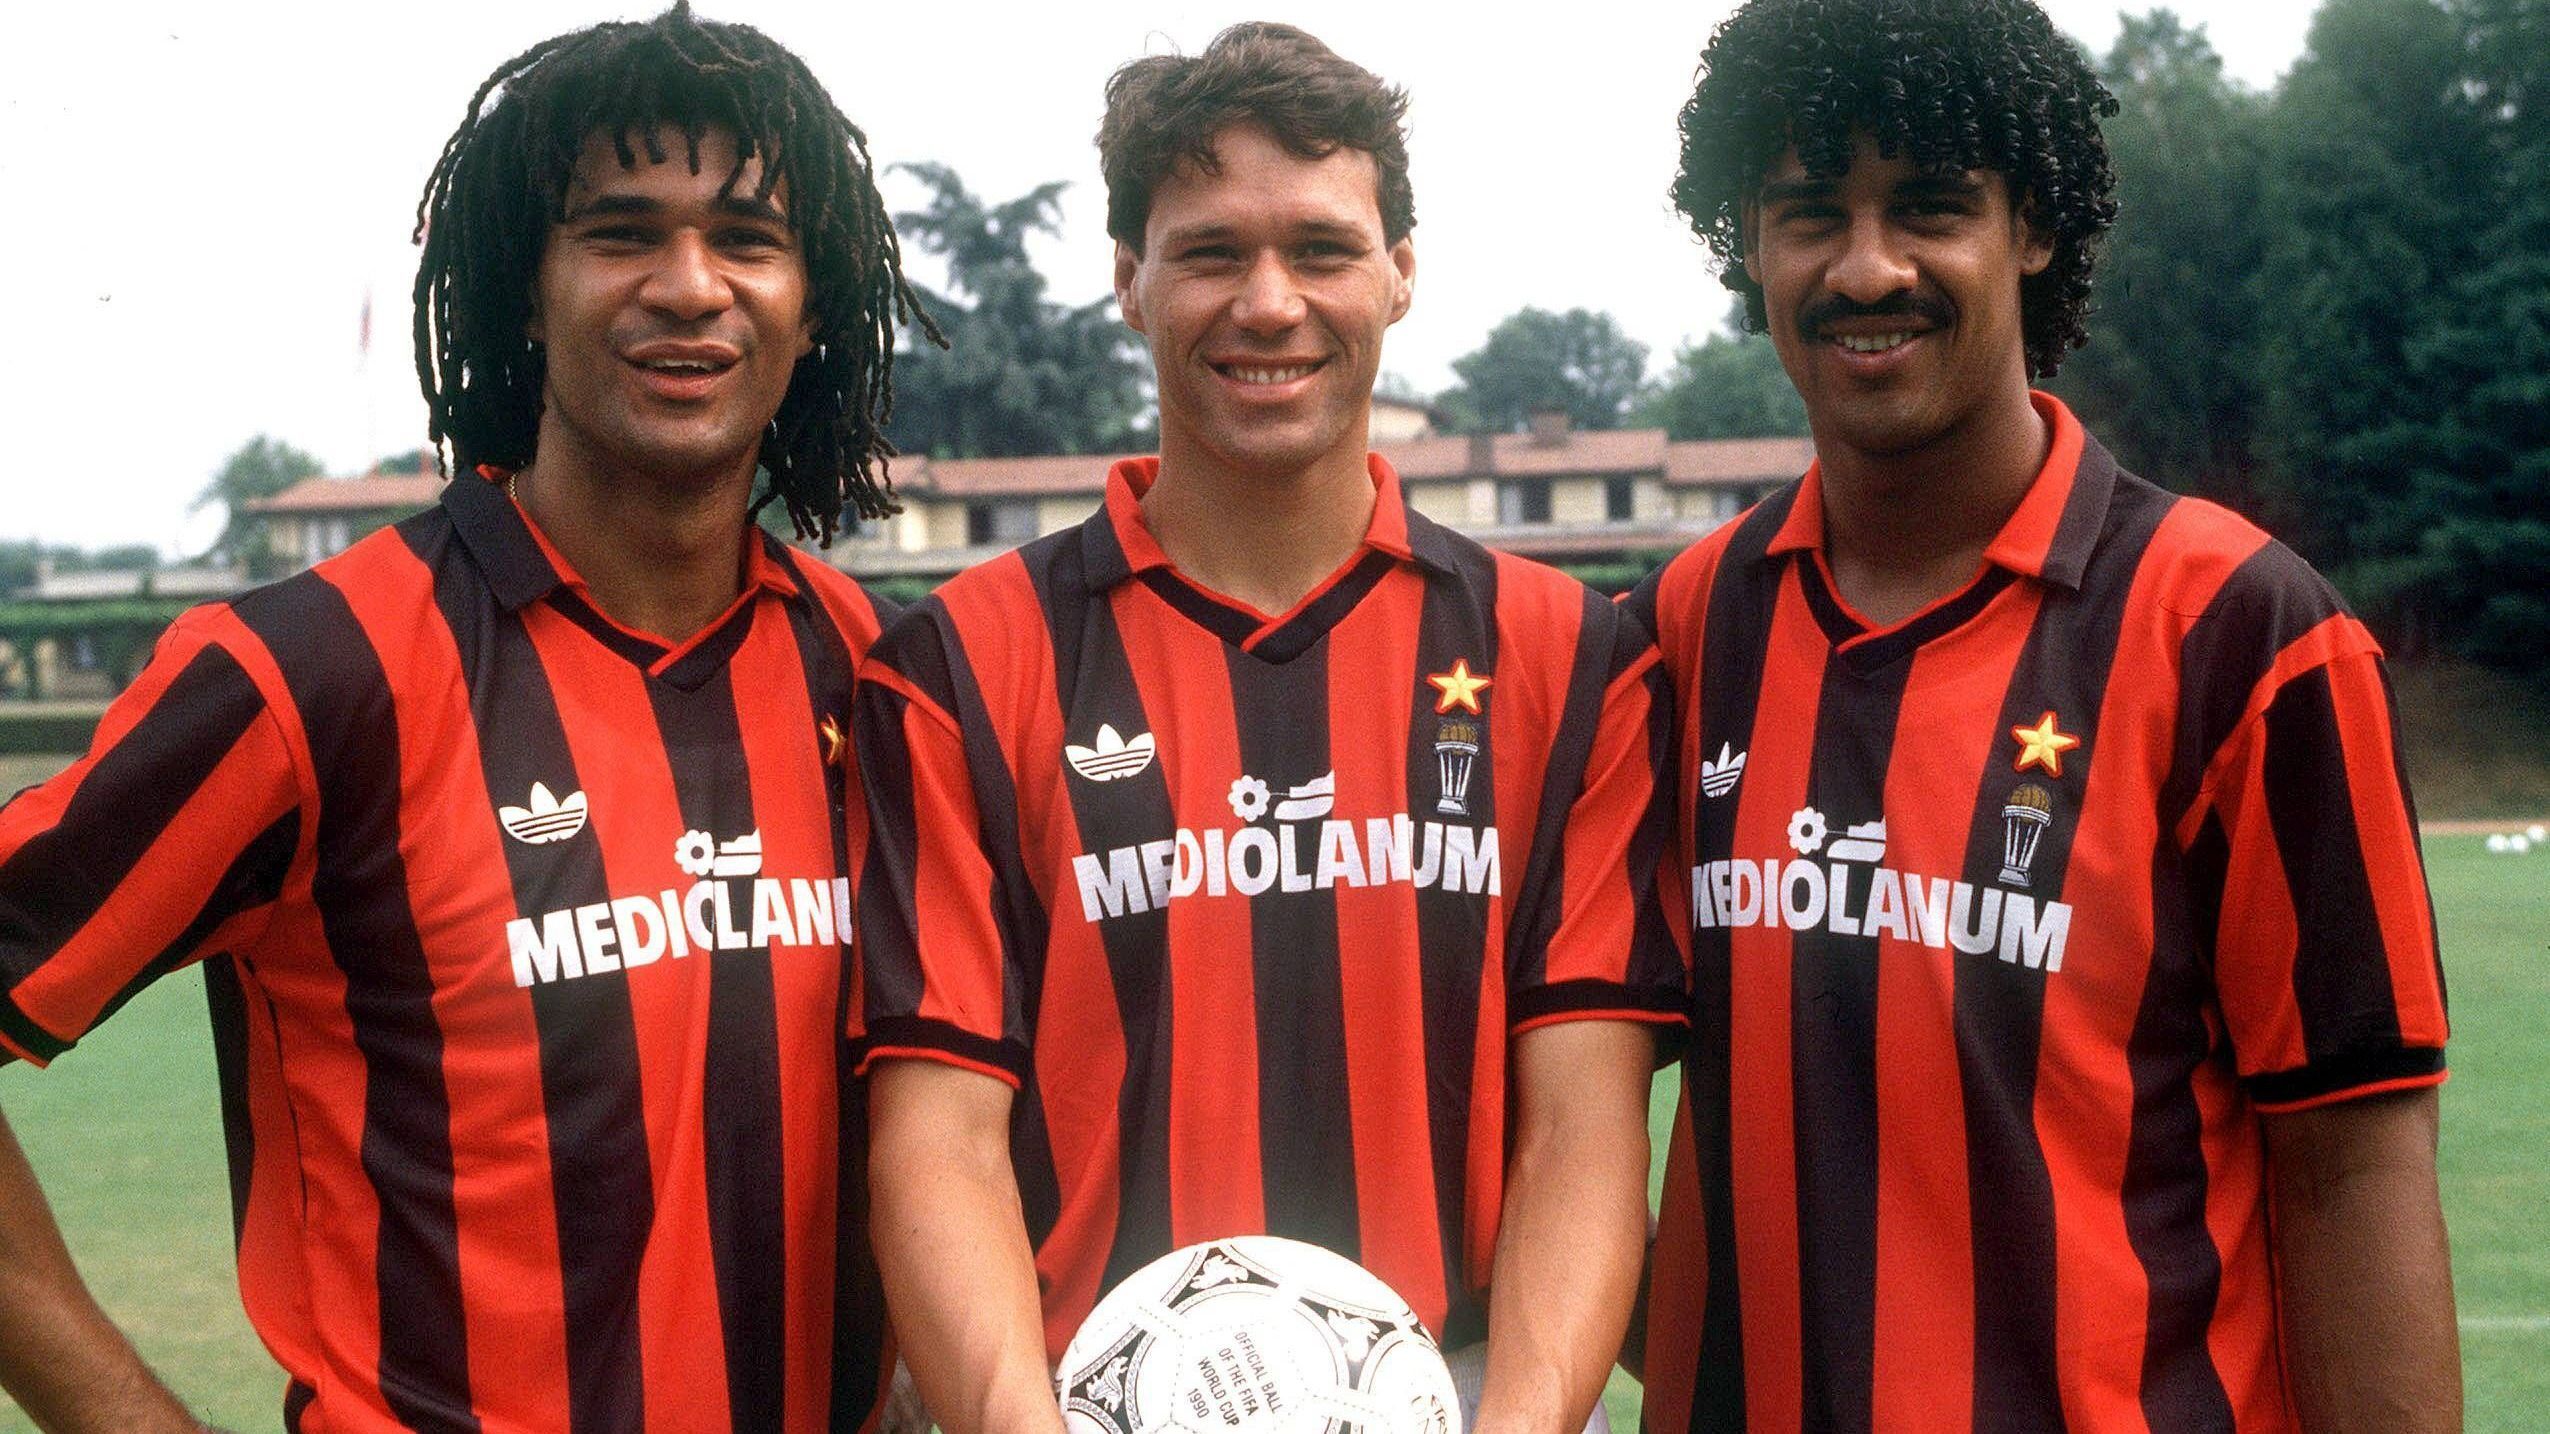 <strong>Italien: AC Mailand 1991/92 </strong><br>
                Auch dank ihrer drei niederländischen Superstars Ruud Gullit, Marco van Basten und Frank Rijkaard (von links) schafften die Rossoneri in der Saison 1991/92 den souveränen Durchmarsch in der Serie A. Am Saisonende war das Team von Fabio Capello mit 22 Siegen und zwölf Unentschieden italienischer Meister vor Juventus Turin.
